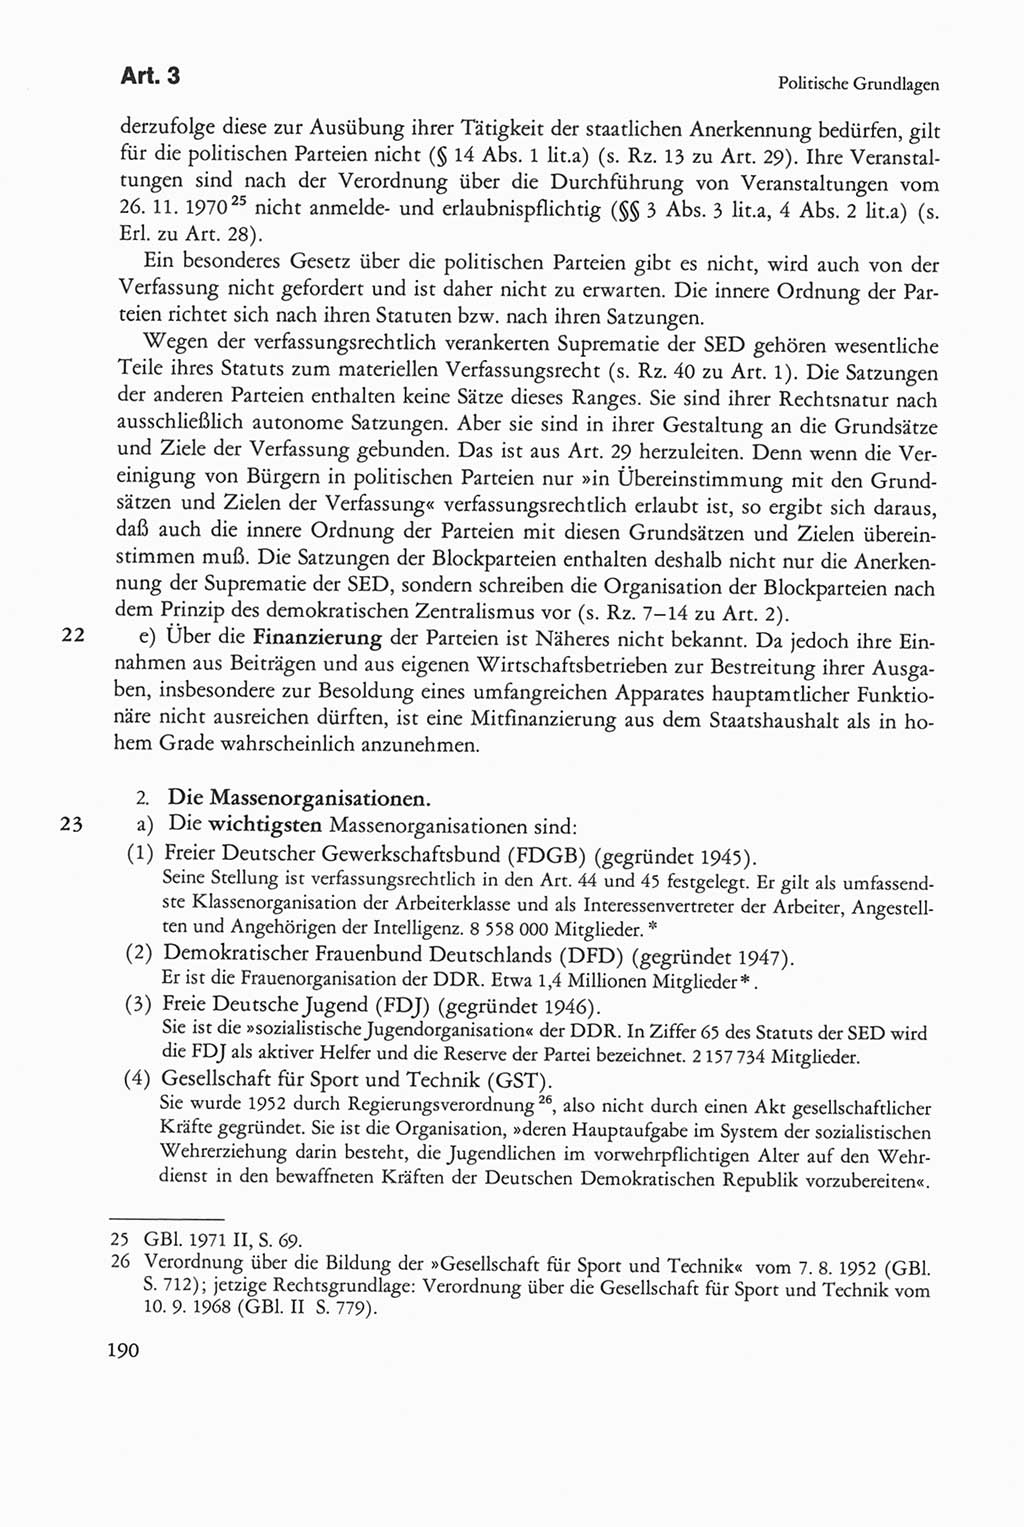 Die sozialistische Verfassung der Deutschen Demokratischen Republik (DDR), Kommentar 1982, Seite 190 (Soz. Verf. DDR Komm. 1982, S. 190)